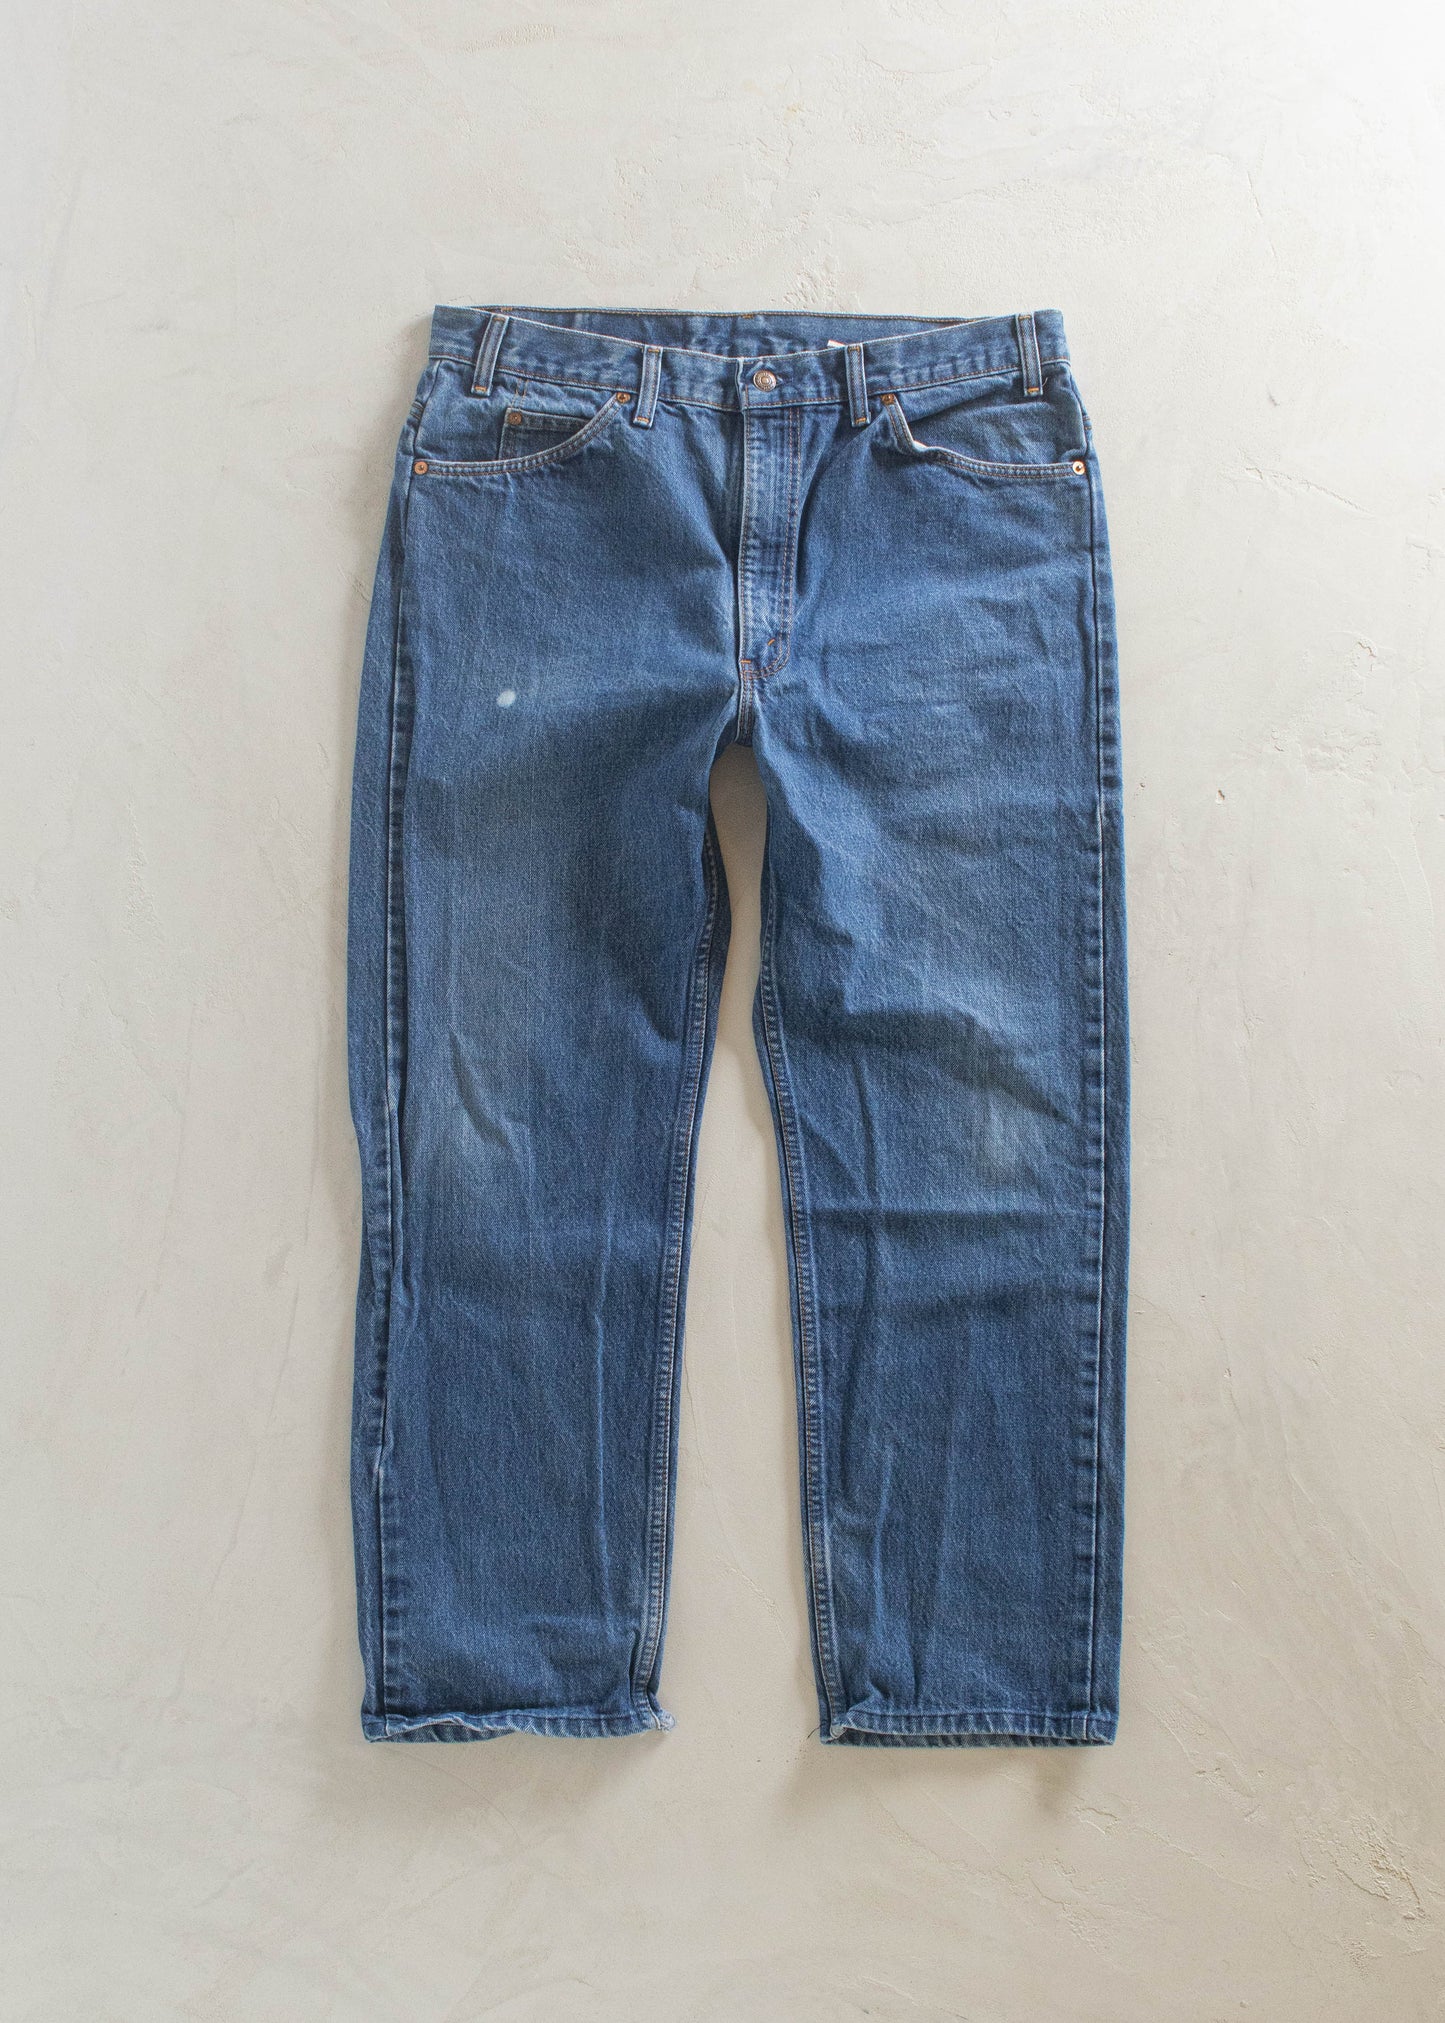 1980s Levi's 505 Orange Tab Midwash Jeans Size Women's 33 Men's 36